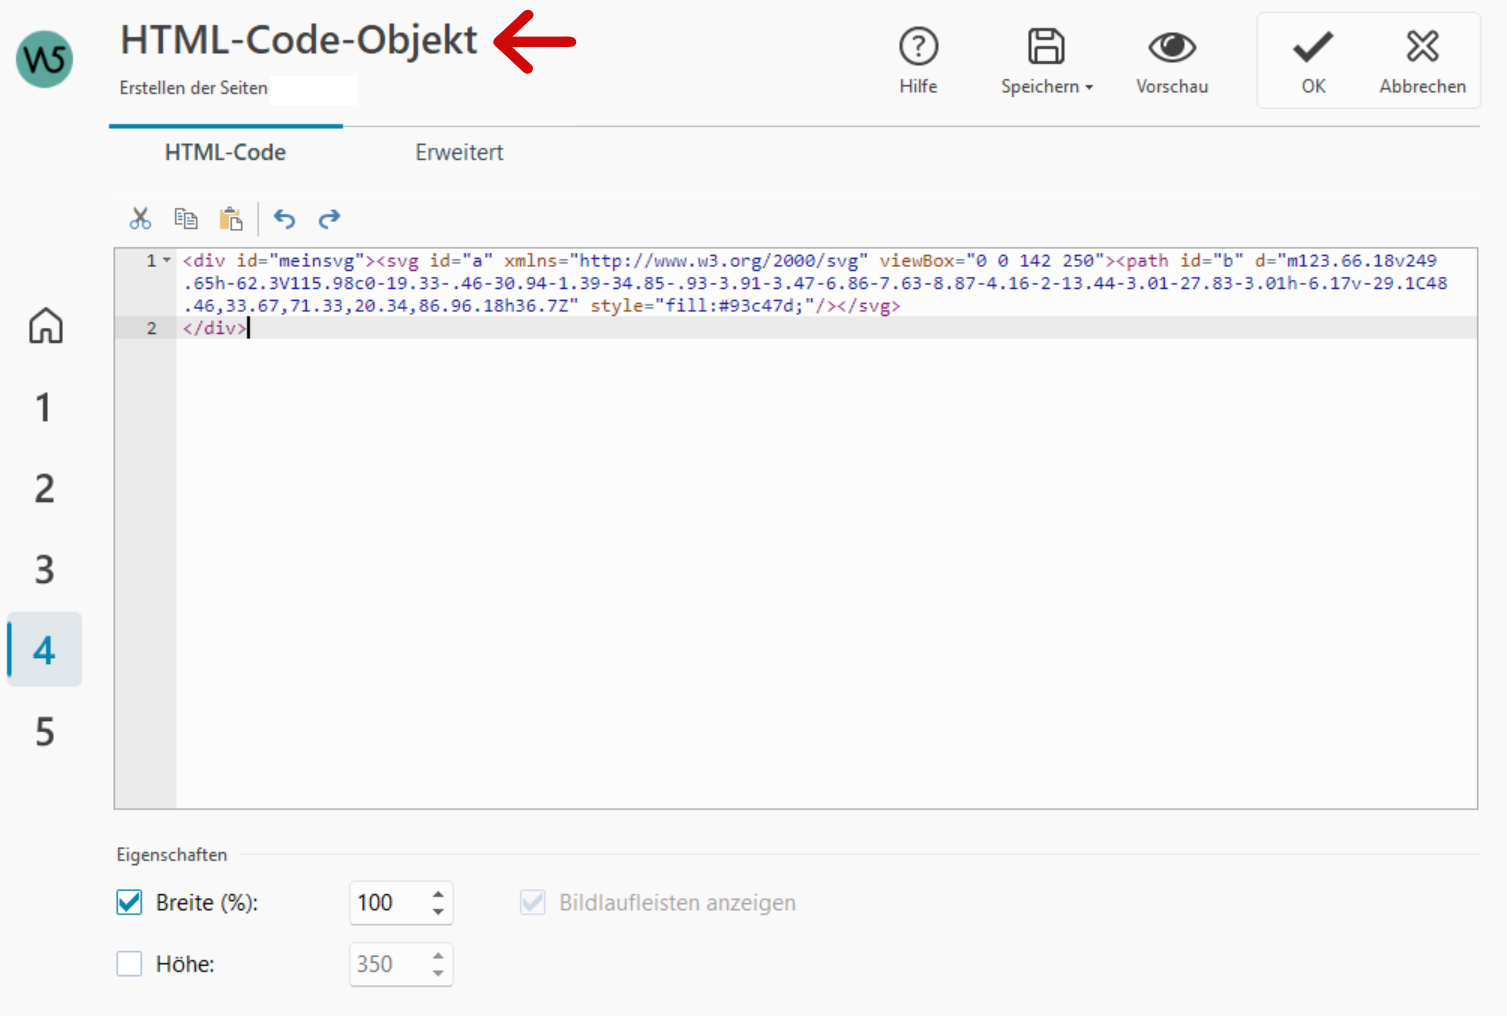 SVG im HTML-Code-Objekt per CSS ansteuern